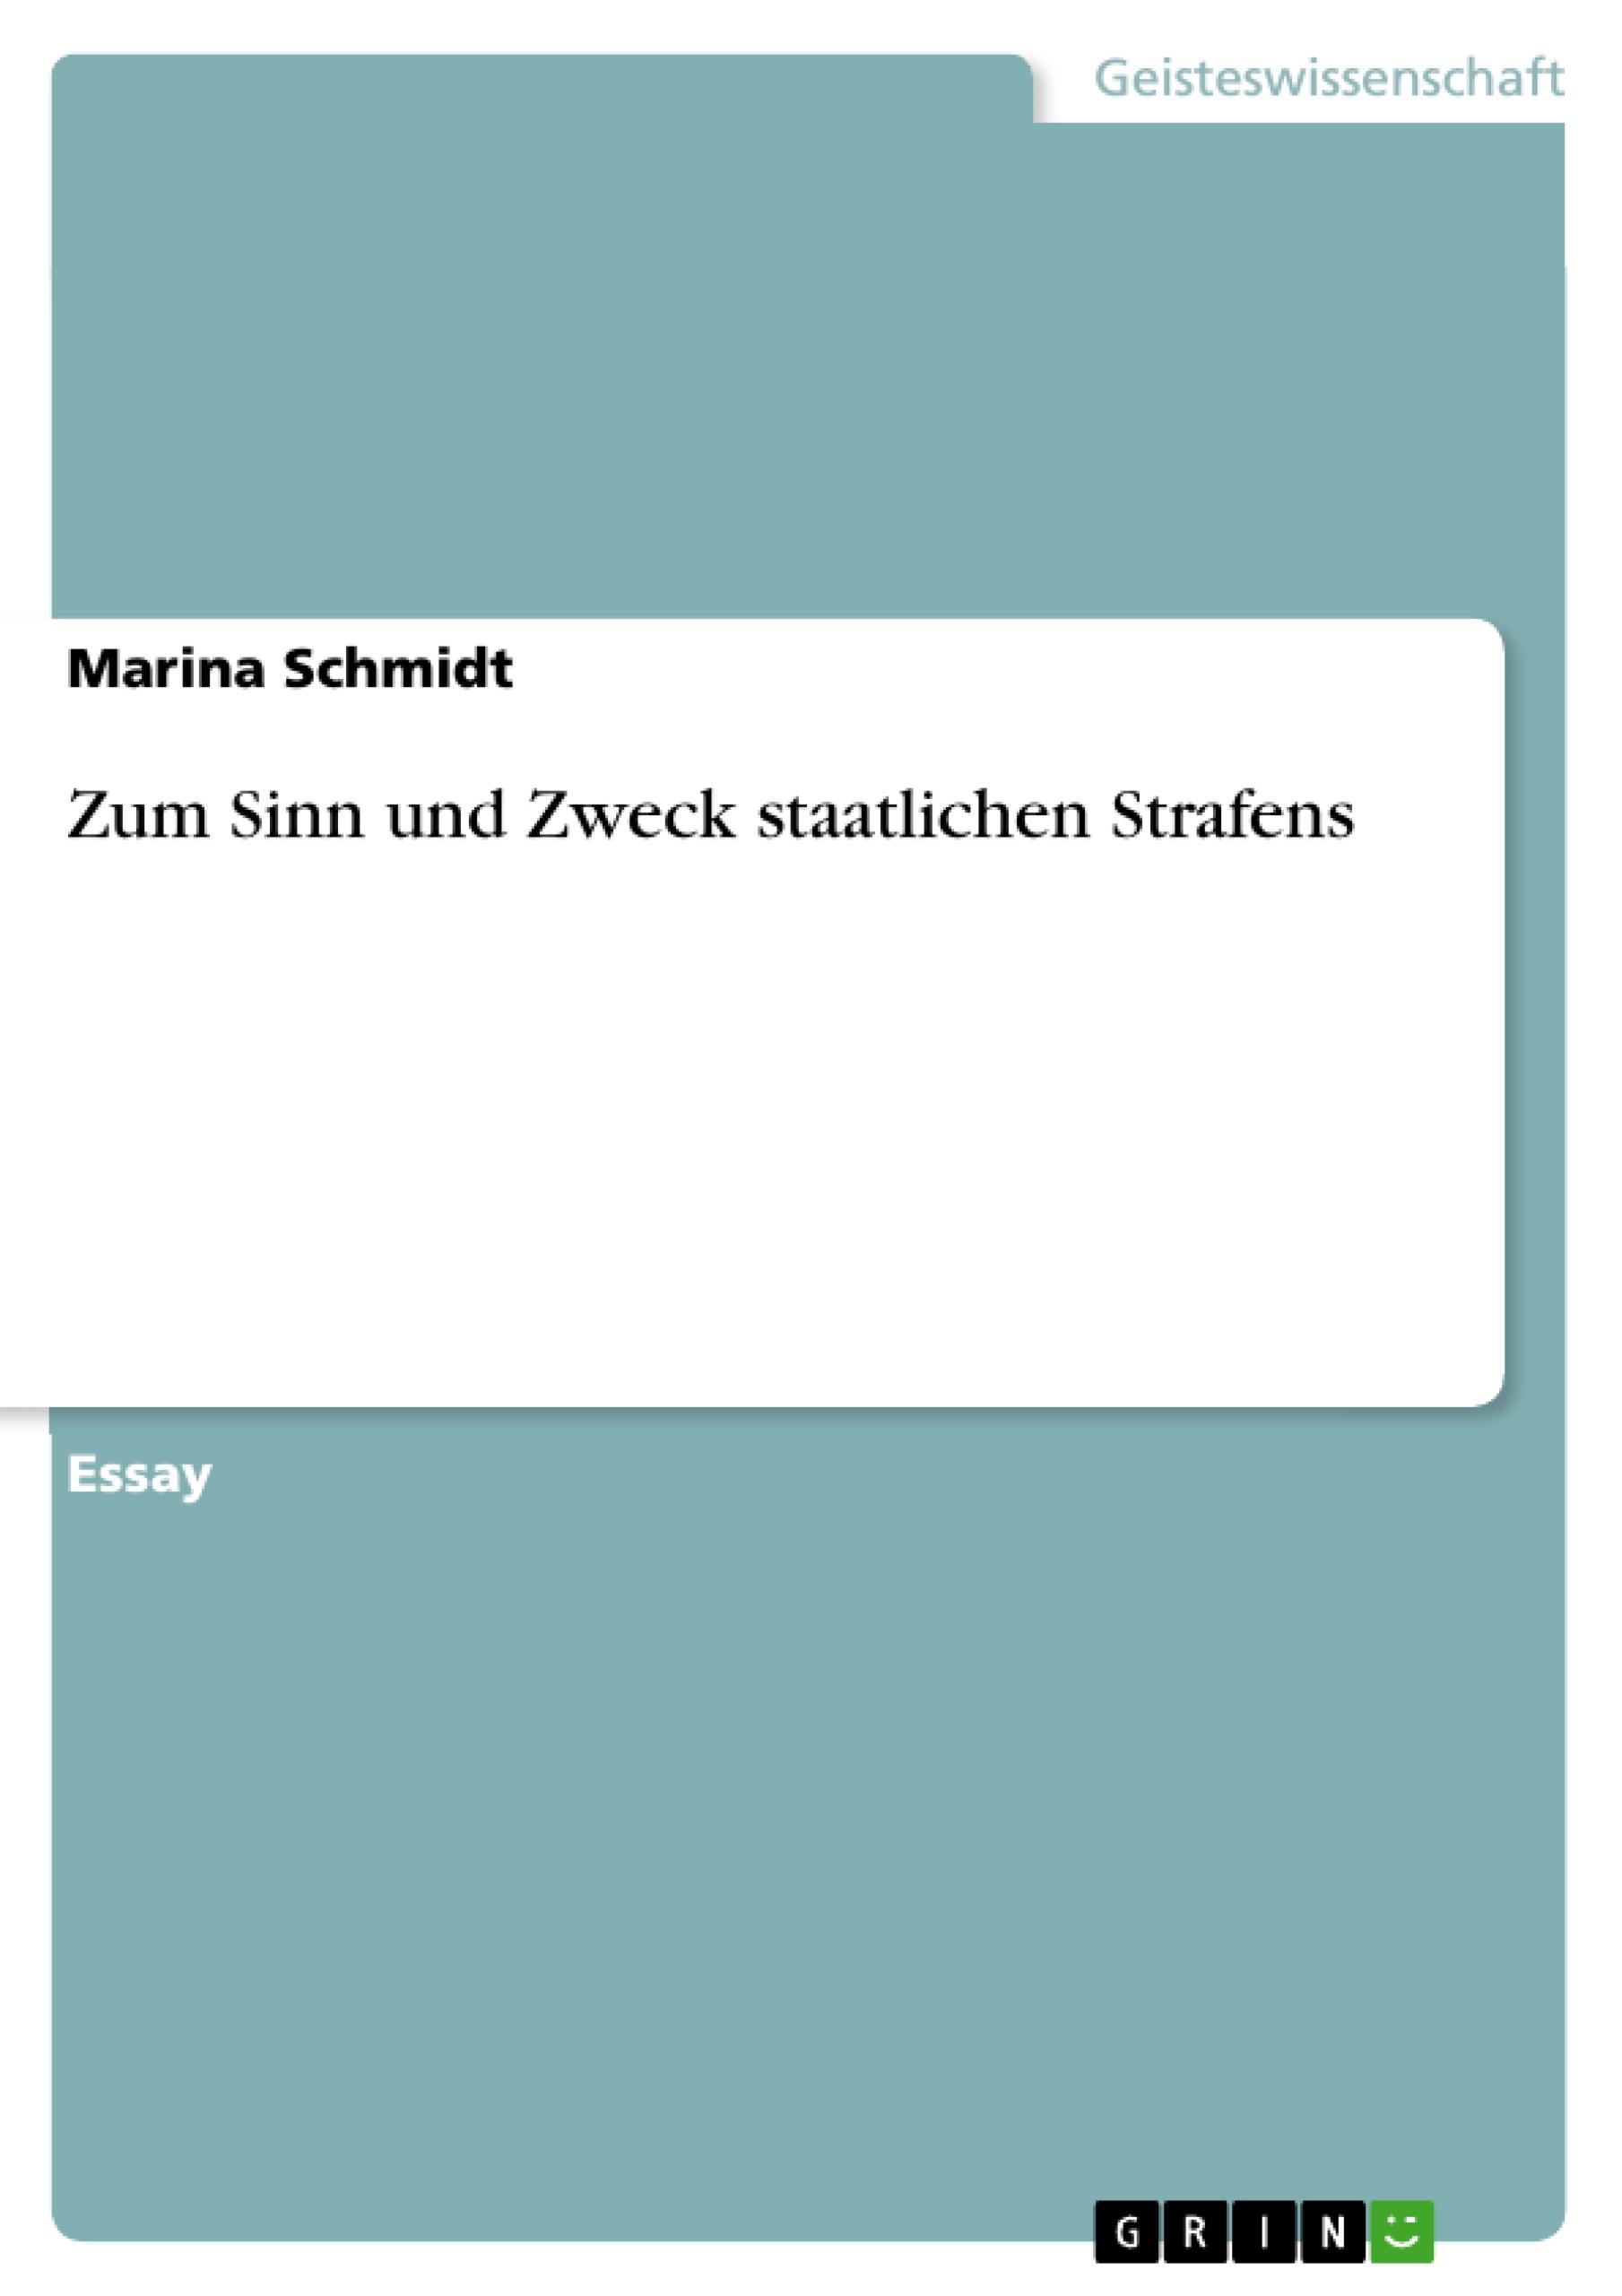 Zum Sinn und Zweck staatlichen Strafens / Marina Schmidt / Taschenbuch / Akademische Schriftenreihe Bd. V153626 / Booklet / Deutsch / 2010 / GRIN Verlag / EAN 9783640660865 - Schmidt, Marina